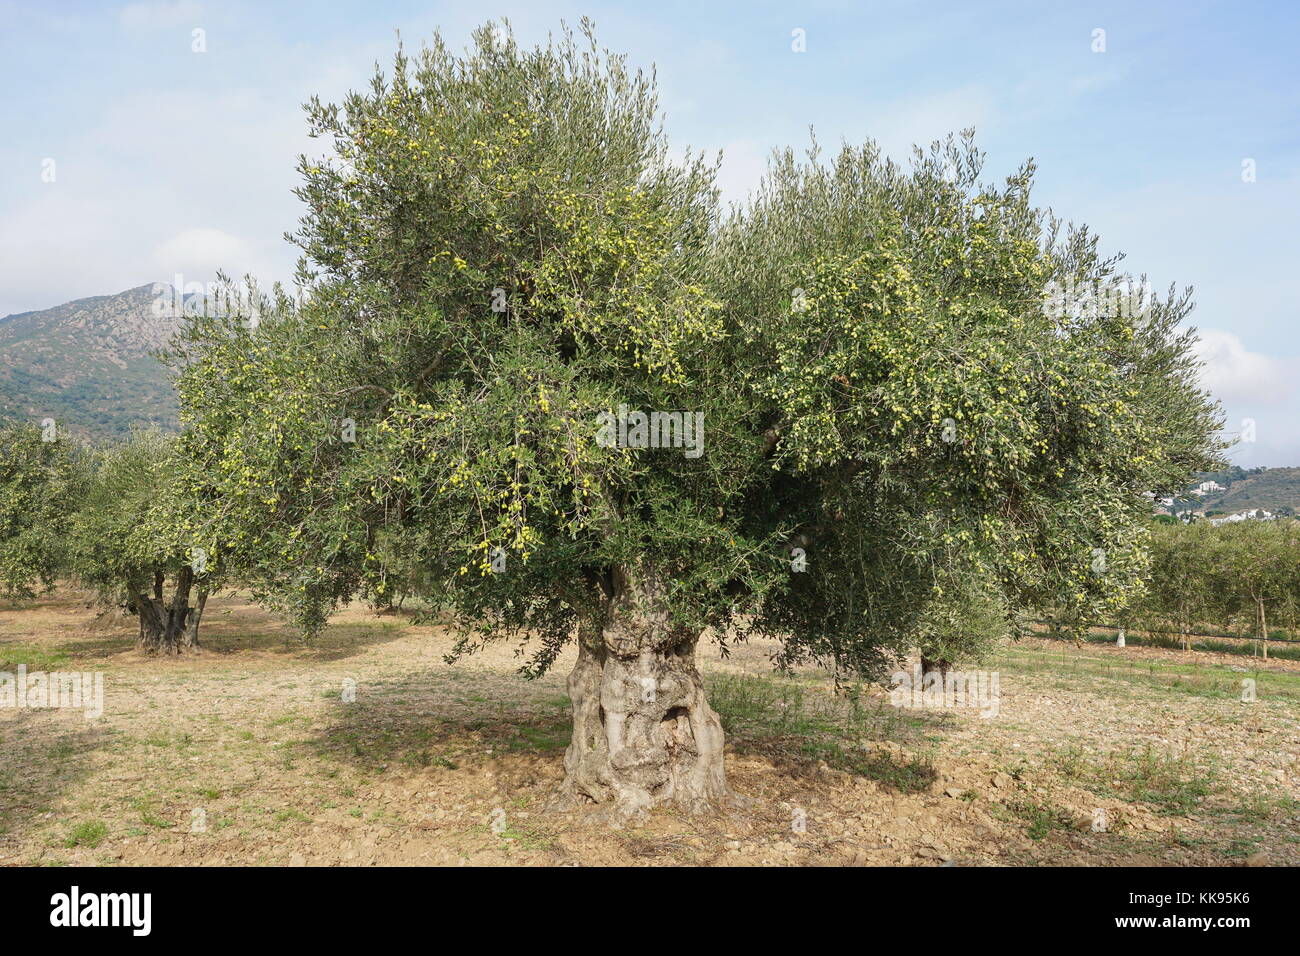 Ein Olivenbaum mit Früchten in einem Feld in Spanien, Mittelmeer, Roses, Girona, Katalonien, Alt Emporda Stockfoto